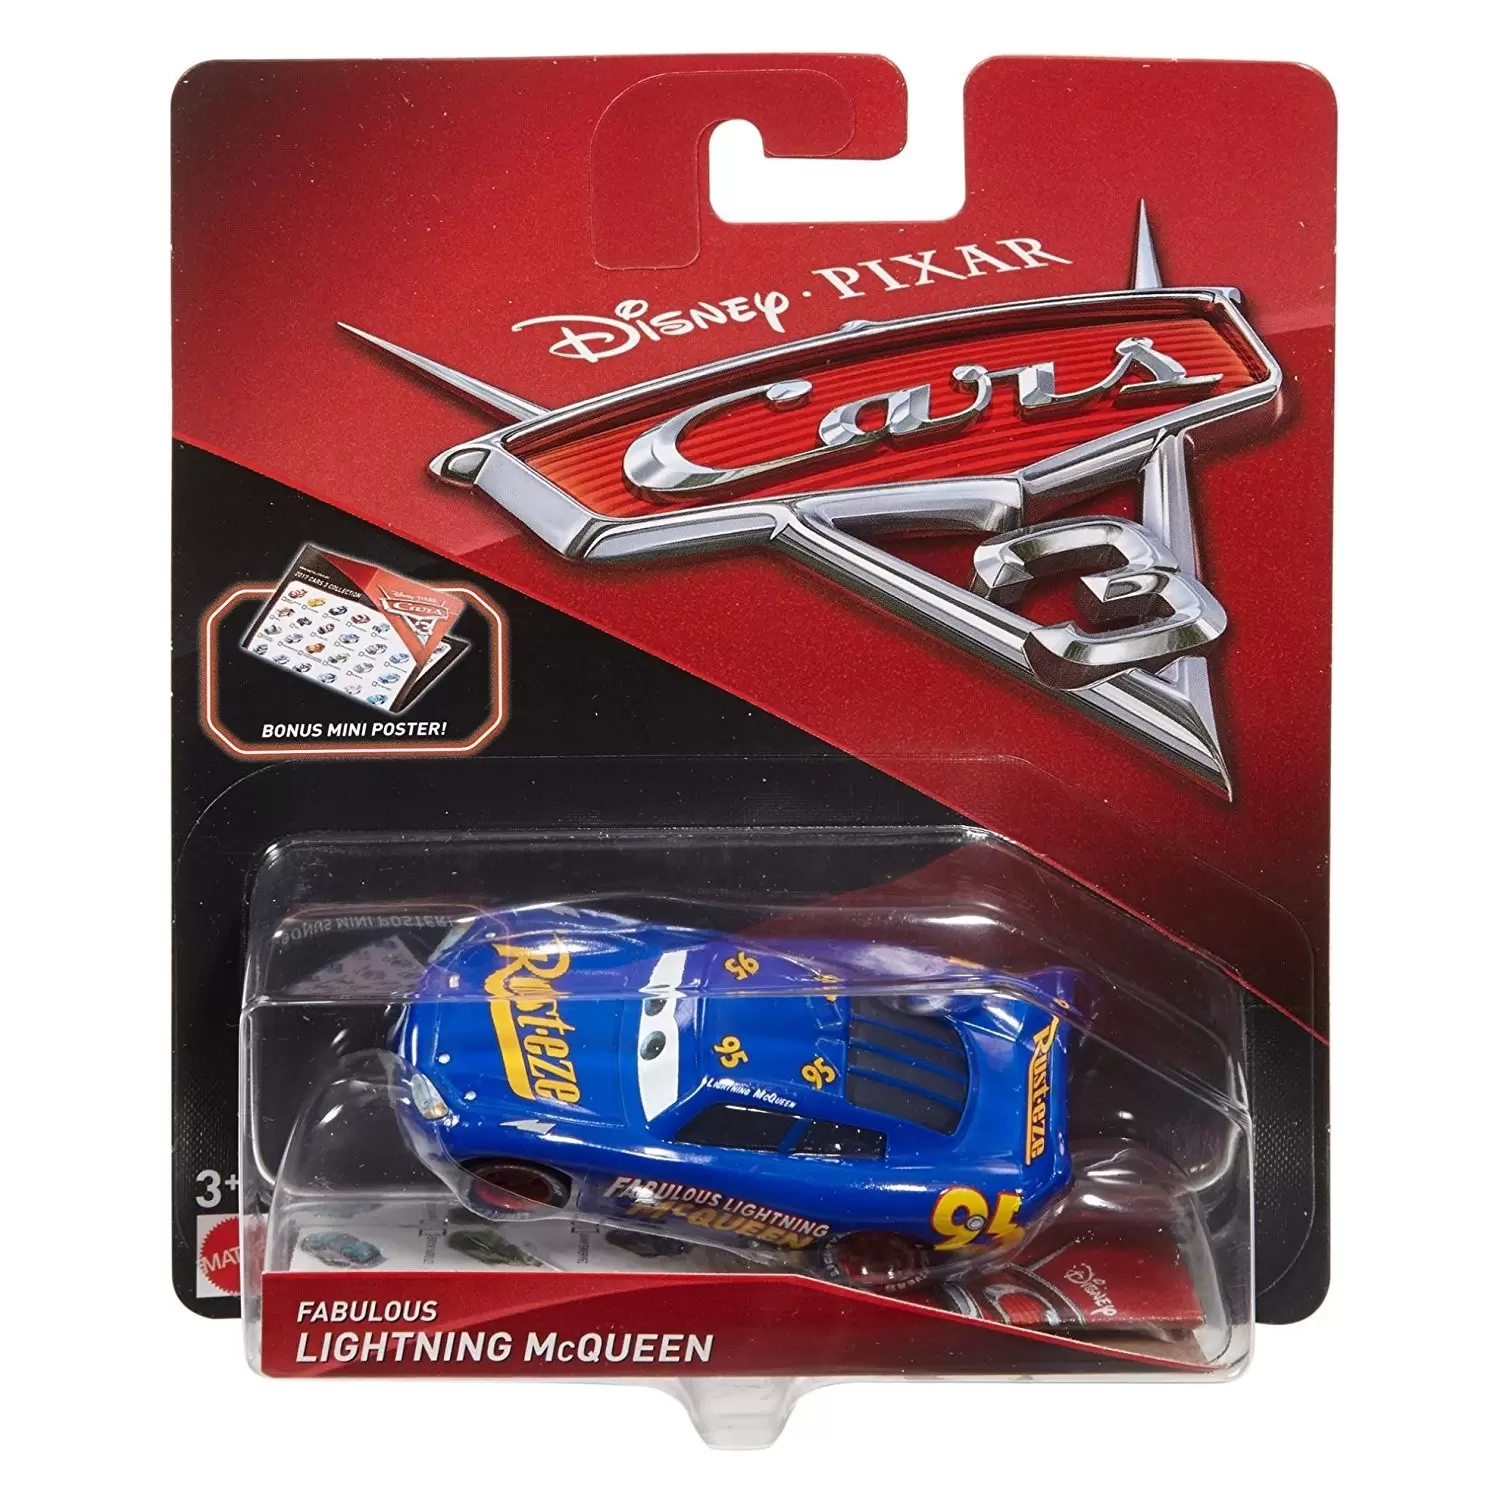 Cars 3 models - Lightning McQueen - Fabulous Lightning